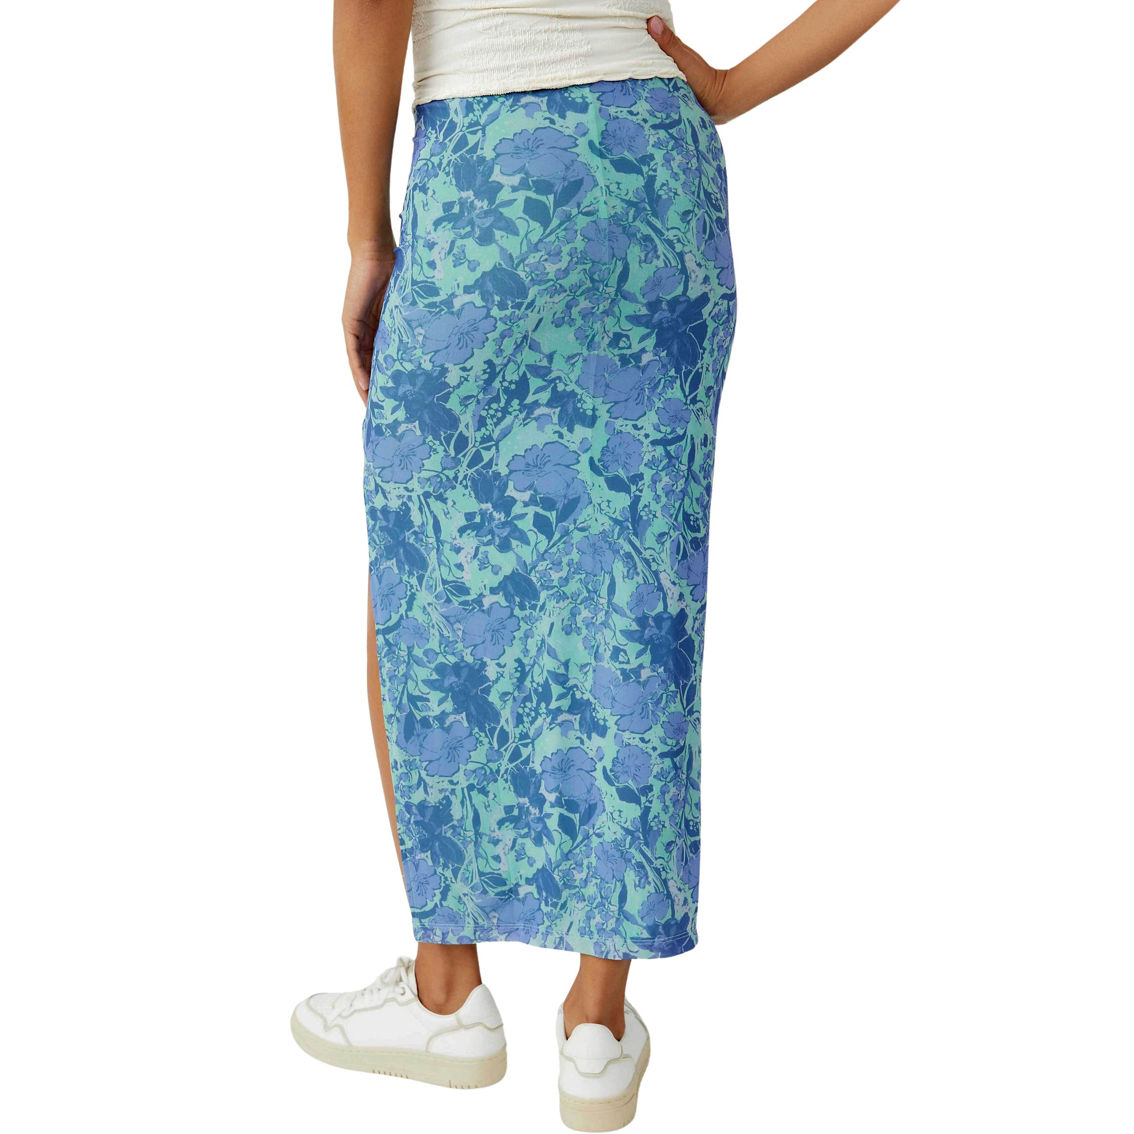 Free People Rosalie Mesh Midi Skirt - Image 2 of 5